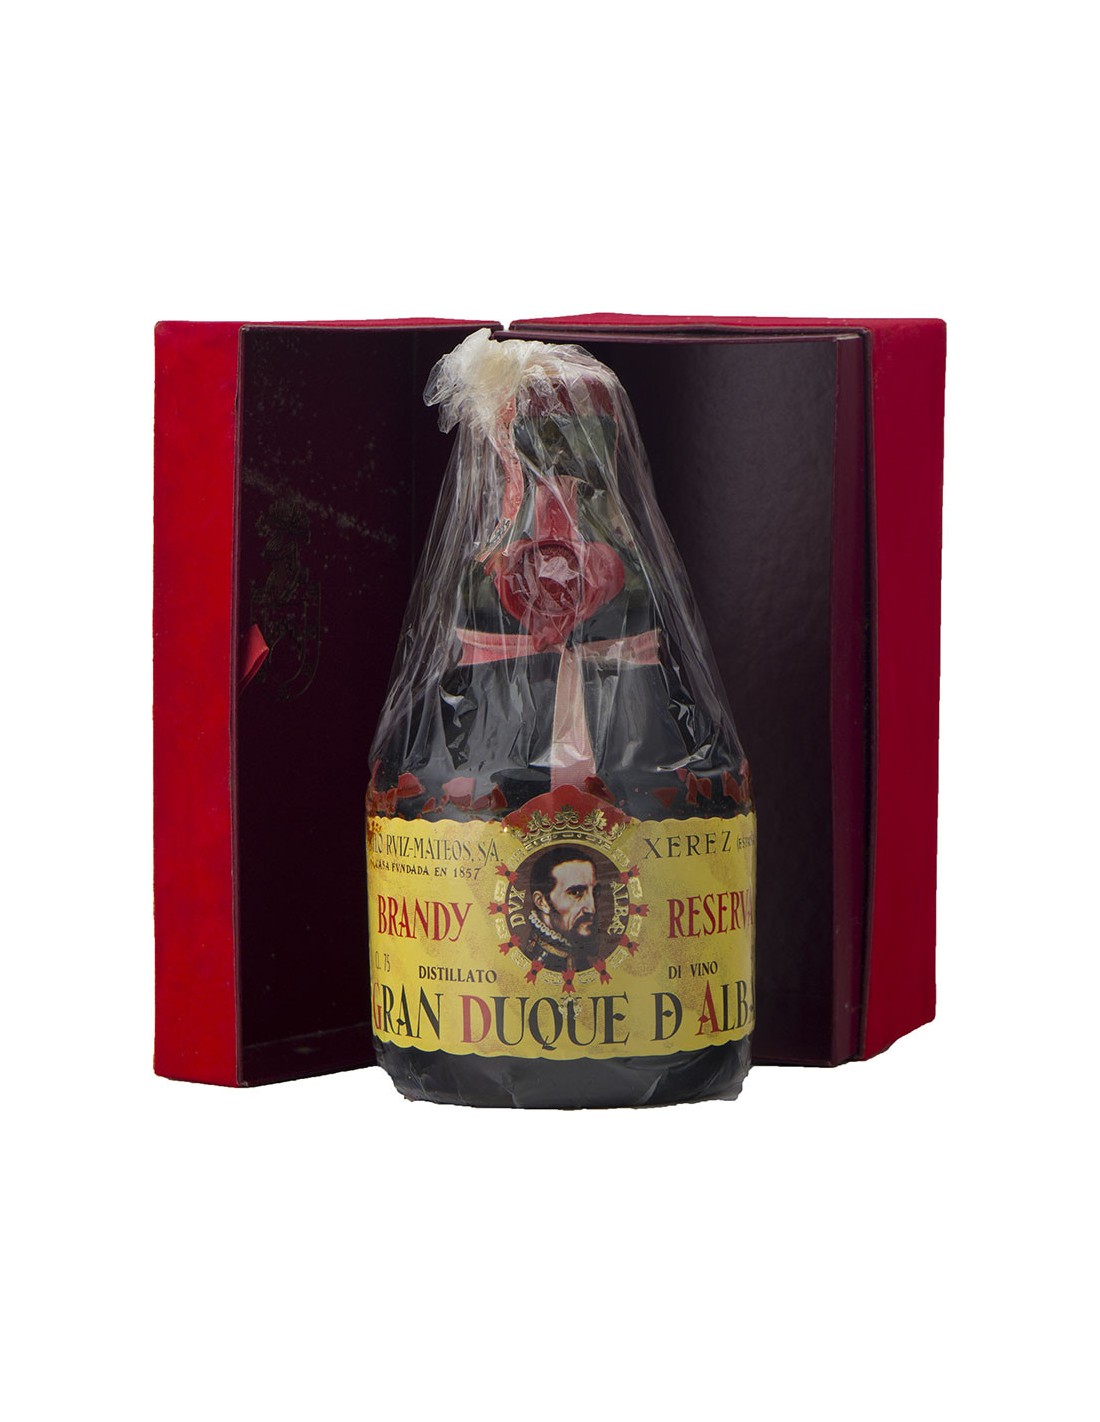 GRAN DUQUE D'ALBA BRANDY DE JEREZ SOLERA GRAN RESERVA 75CL 40VOL NV GRAN DUQUE ALBA Grandi Bottiglie